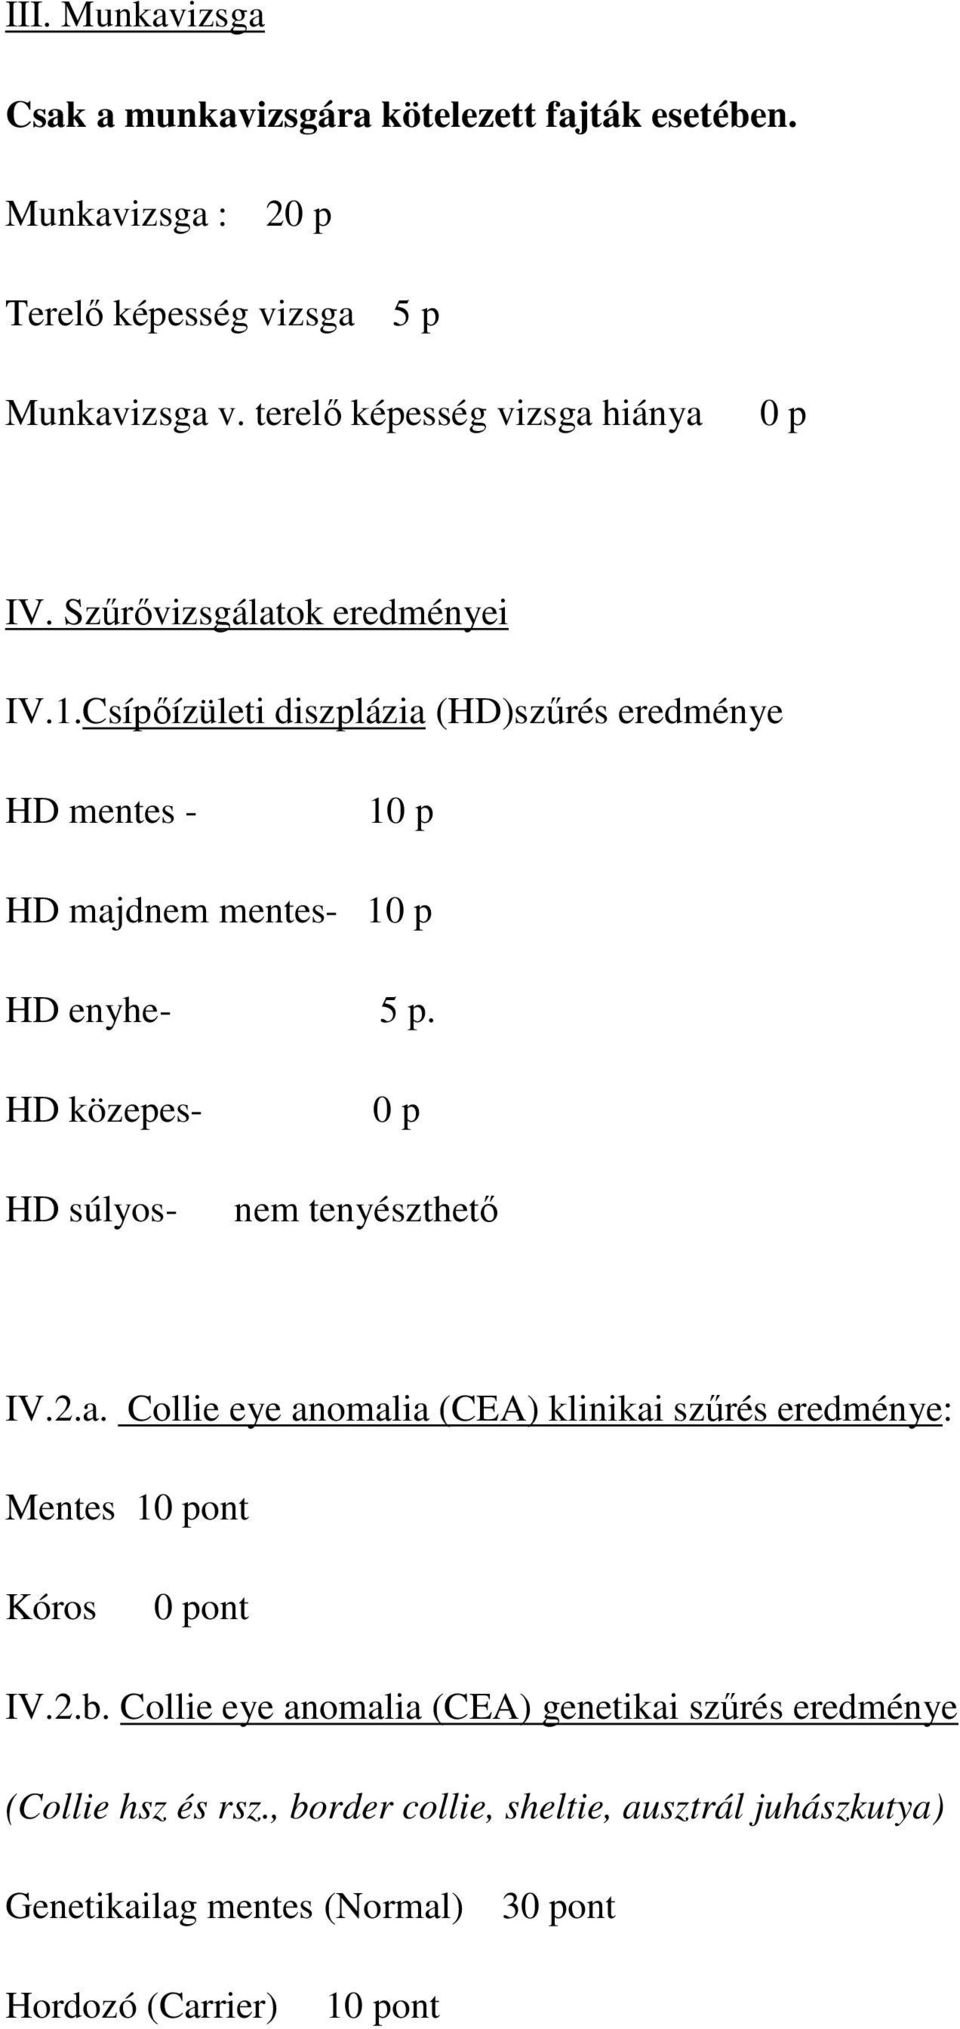 Csípőízületi diszplázia (HD)szűrés eredménye HD - 10 p HD majdnem - 10 p HD enyhe- 5 p. HD közepes- HD súlyos- 0 p nem tenyészthető IV.2.a. Collie eye anomalia (CEA) klinikai szűrés eredménye: Mentes 10 pont Kóros 0 pont IV.